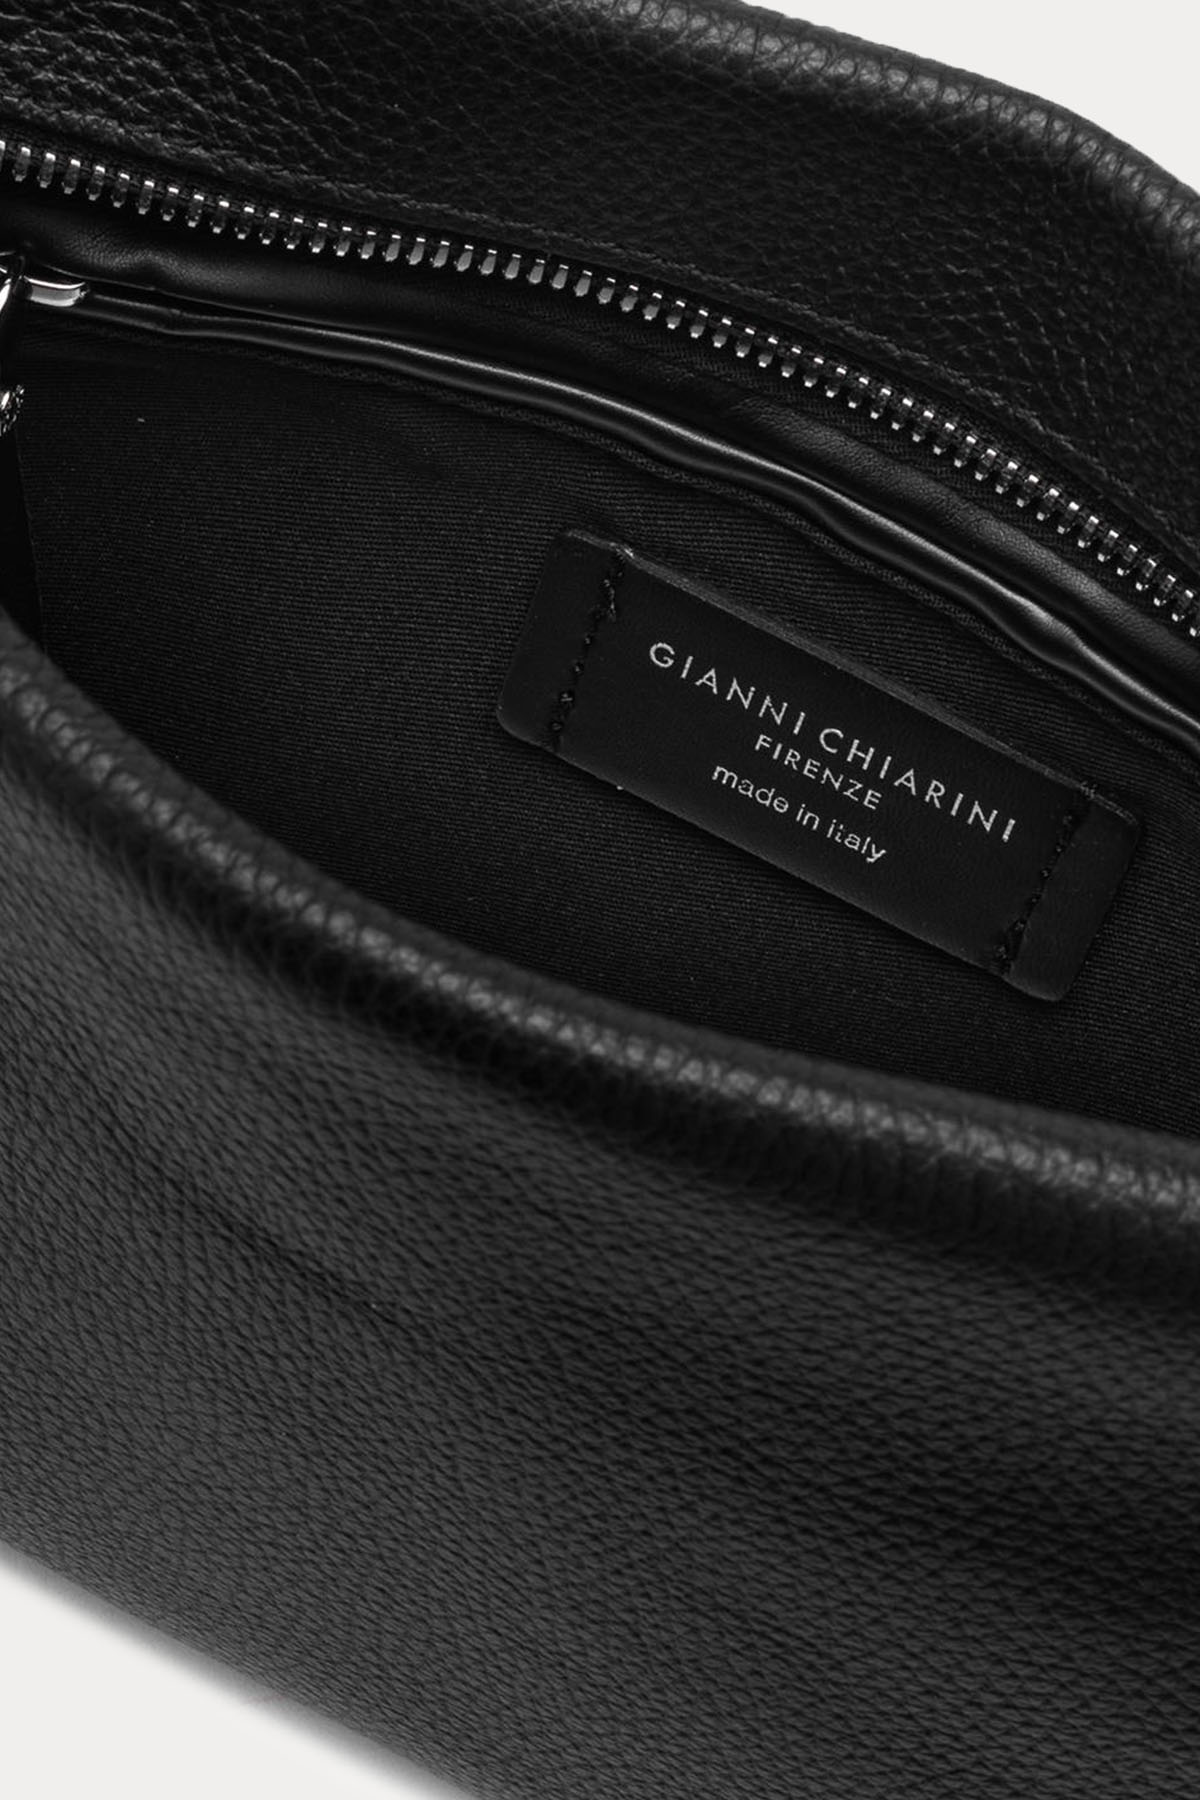 Gianni Chiarini Brenda Zincir Askılı Deri Çanta-Libas Trendy Fashion Store